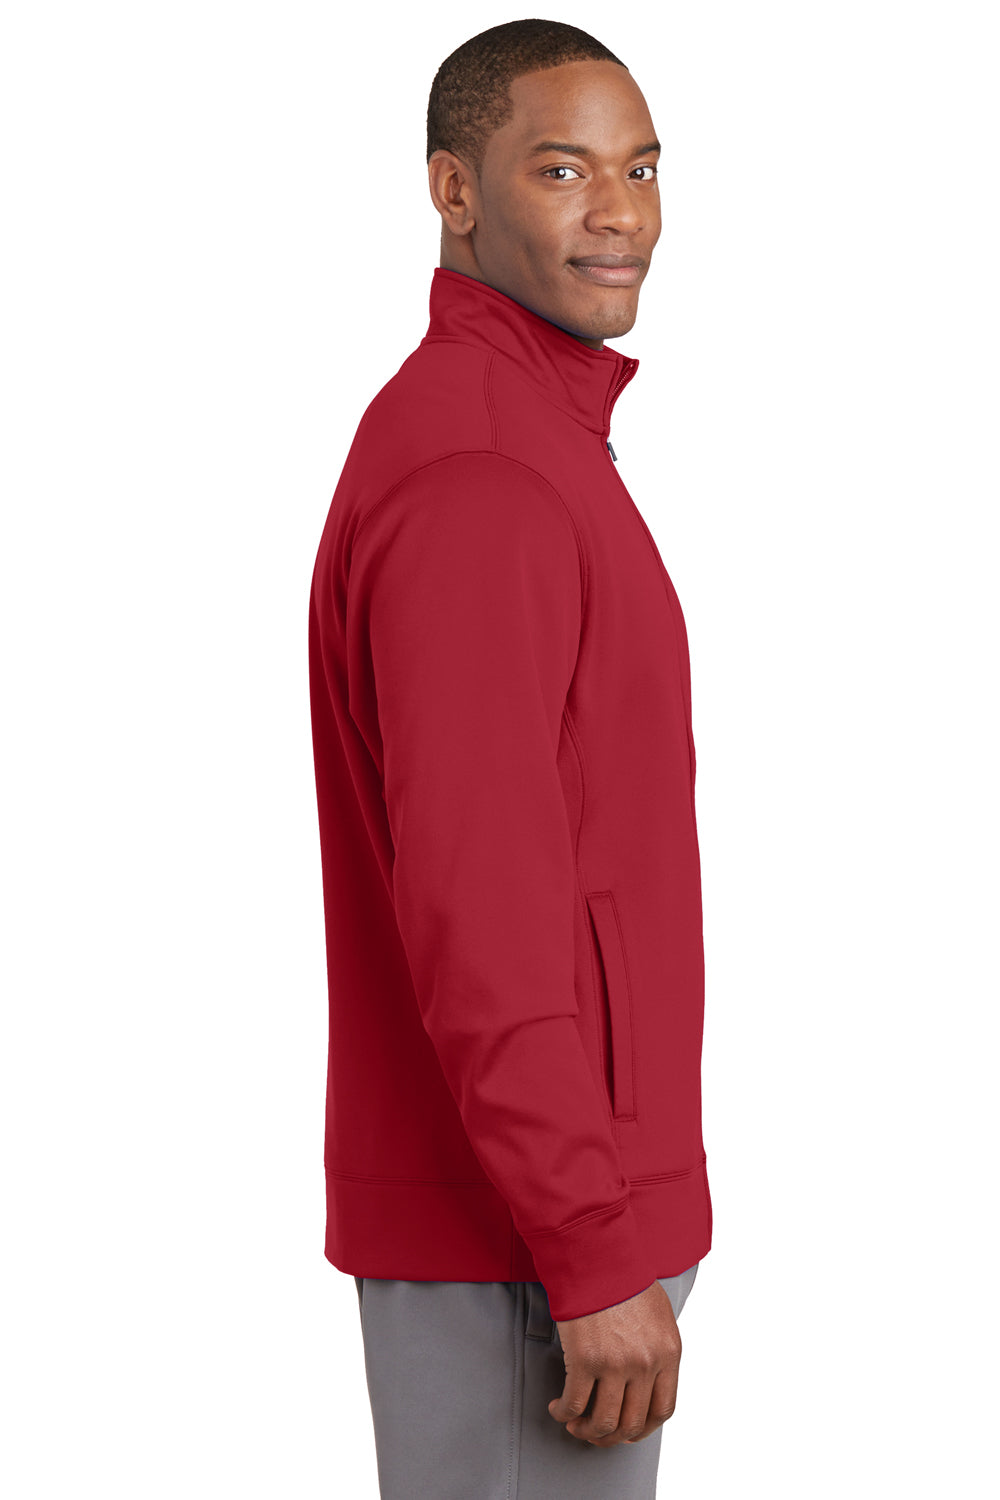 Sport-Tek ST241 Mens Sport-Wick Moisture Wicking Fleece Full Zip Sweatshirt Red Side